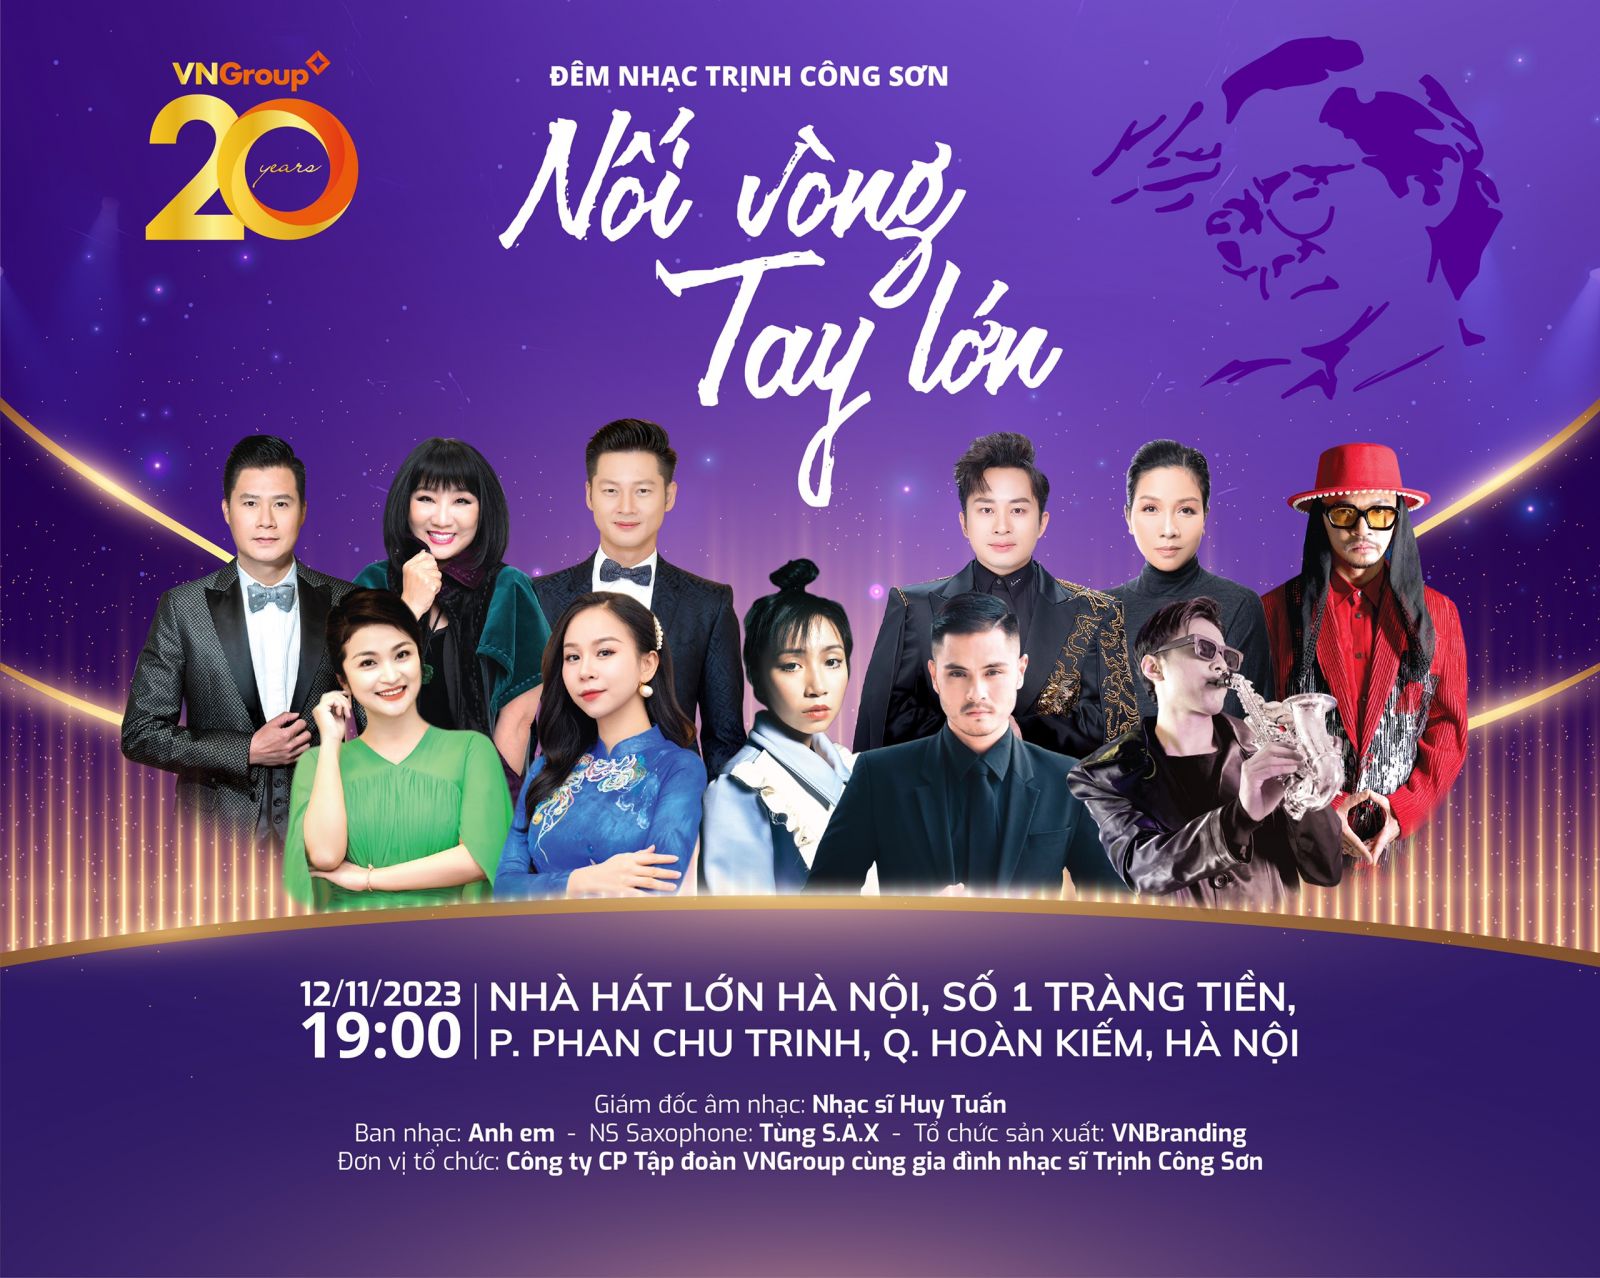 Đêm nhạc Trịnh Công Sơn: Nối vòng tay lớn” sẽ diễn ra vào 18h00 Chủ Nhật ngày 12/11/2023 tại Nhà hát Lớn Hà Nội